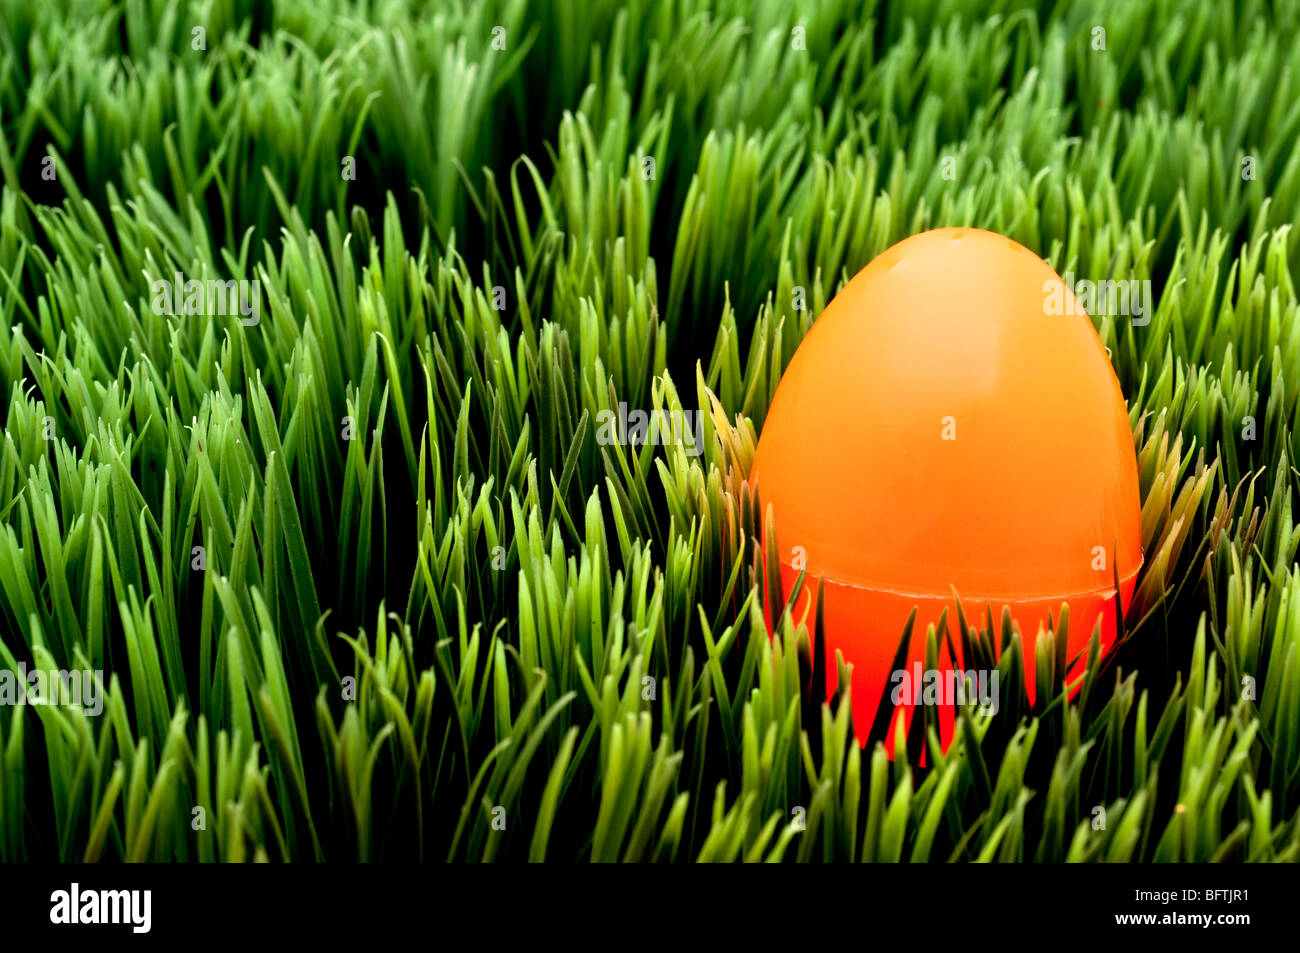 Image horizontale d'un oeuf de Pâques orange on Green grass Banque D'Images